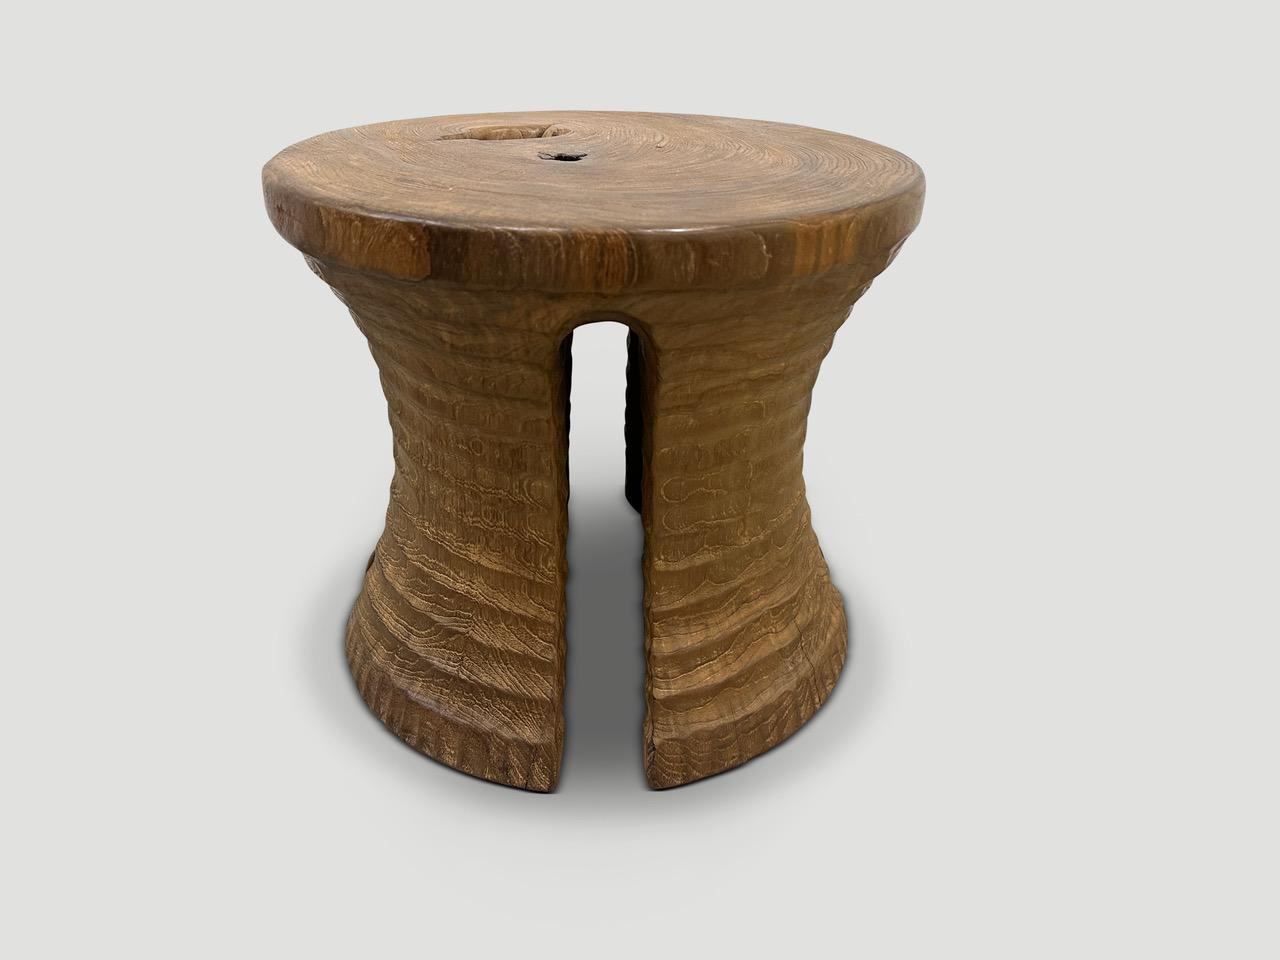 Un mortier centenaire en bois de teck, utilisé à l'origine pour moudre le riz, est réutilisé pour fabriquer cette table d'appoint ou ce tabouret minimaliste. Fait partie de la Collection Siècle Couture, présentant notre sculpture minimaliste unique.